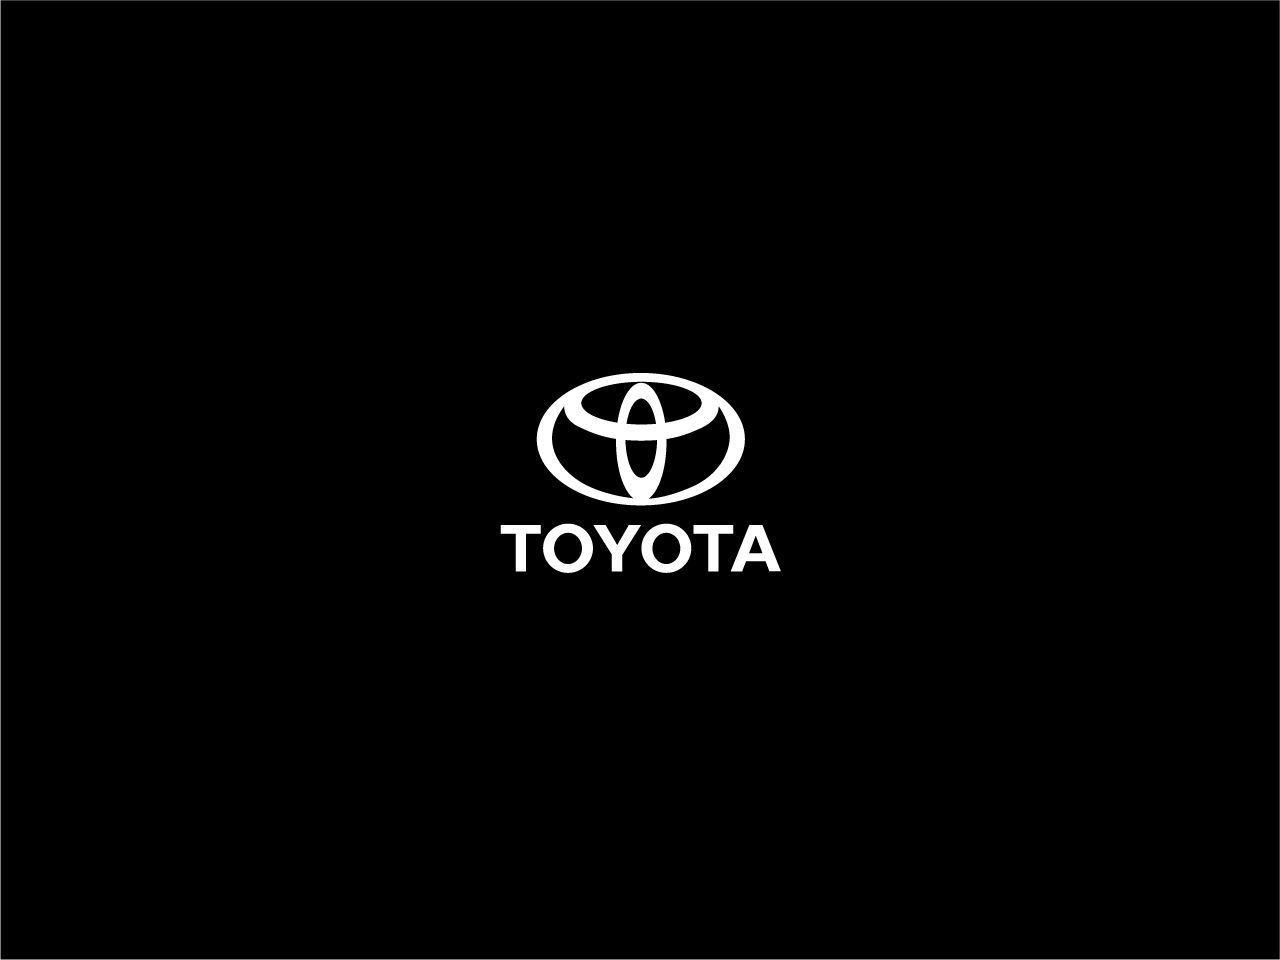 Toyota Logo Wallpaper For Your Desktop